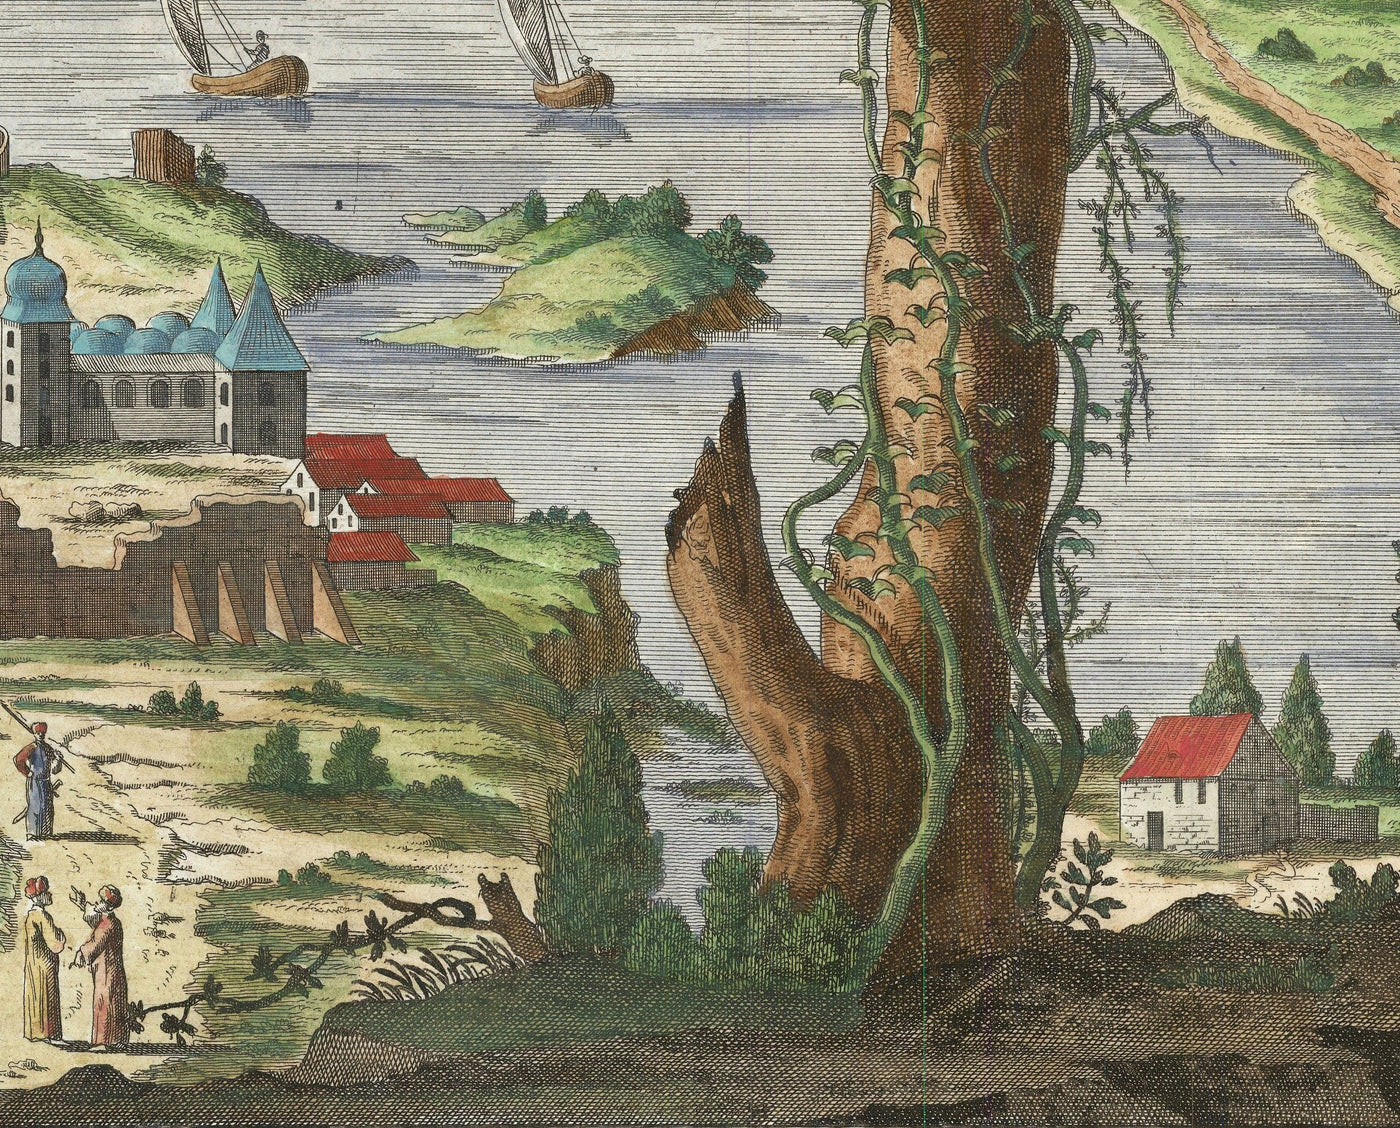 Ancienne carte d'Istanbul (Constantinople) 1720 par Wolff - Architecture ottomane et byzantine - Palais de Topkapi, Sainte-Sophie, mosquées